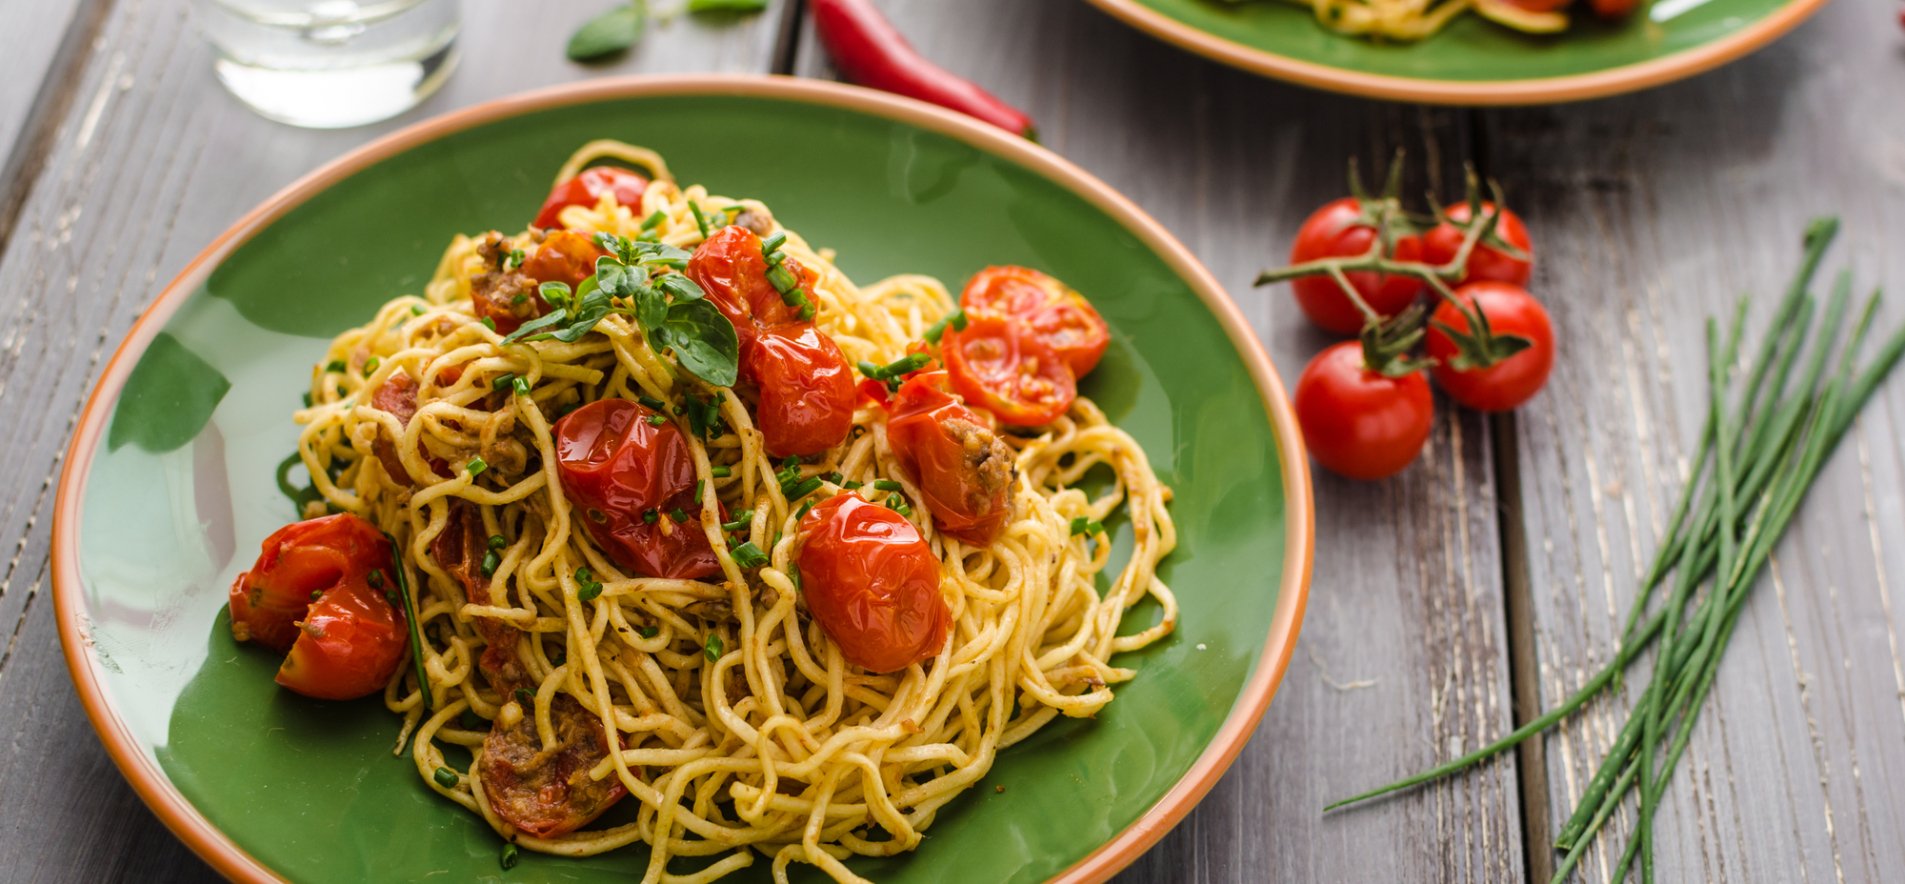 Рецепт СПАГЕТТИ С ТОМАТНЫМ СОУСОМ по-итальянски. Как приготовить итальянскую пасту в томатном соусе